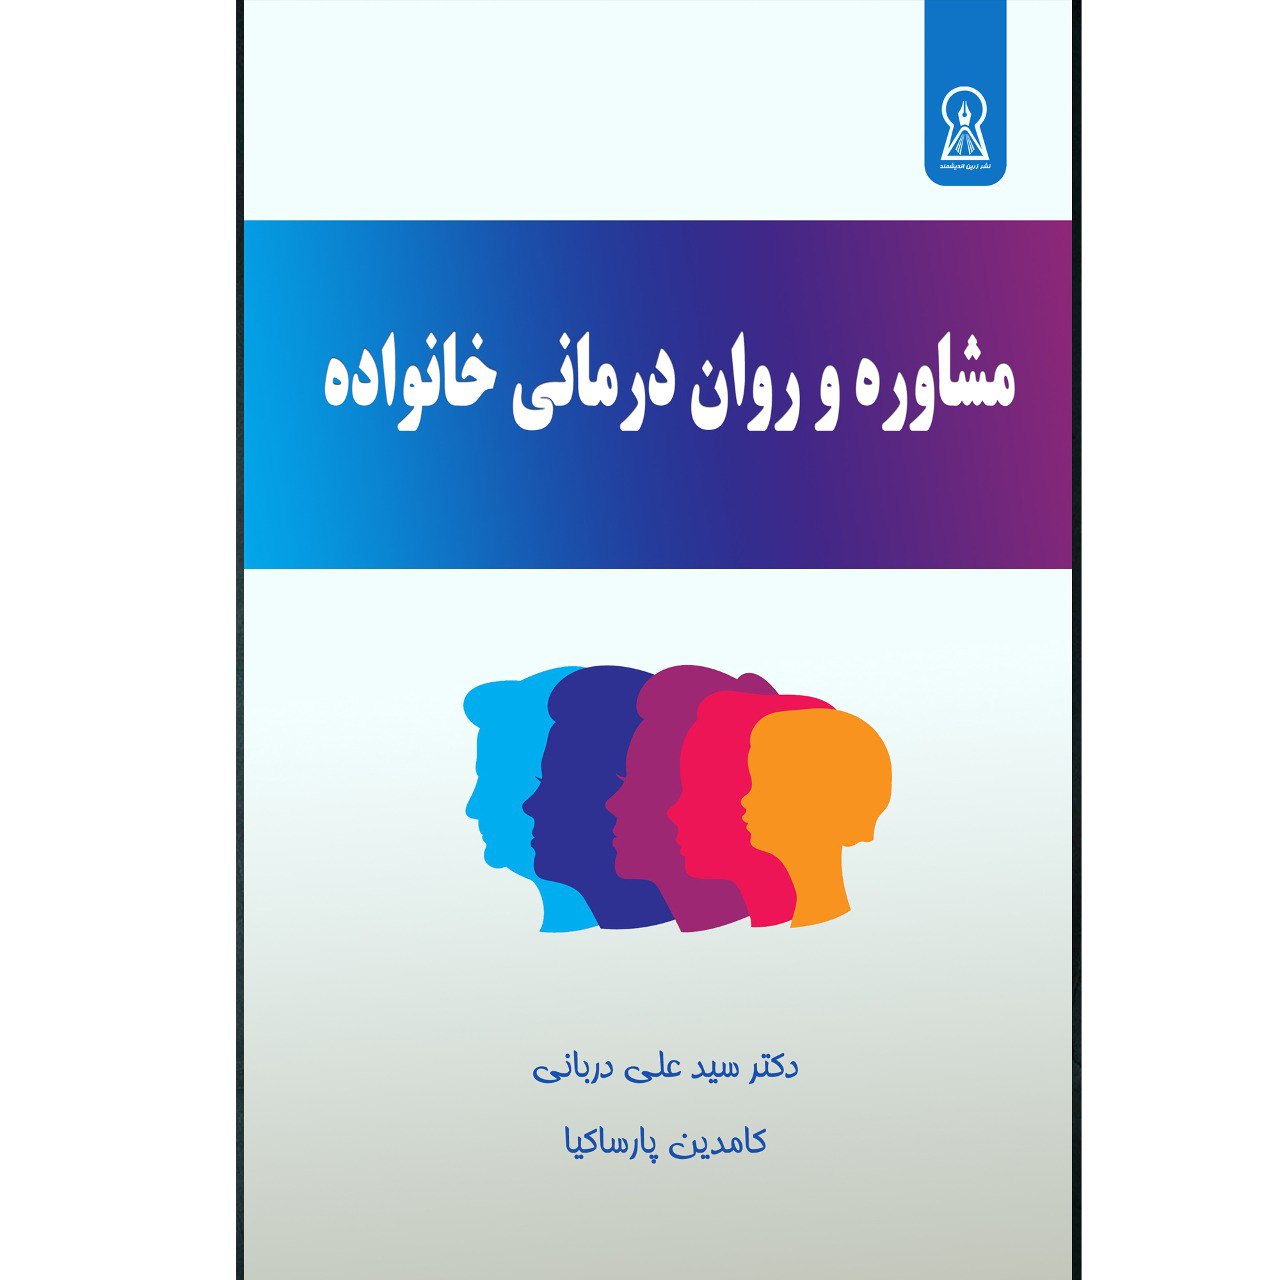 کتاب مشاوره و روان درمانی خانواده  اثر سید علی دربانی و کامدین پارسا کیا نشر زرین اندیشمند